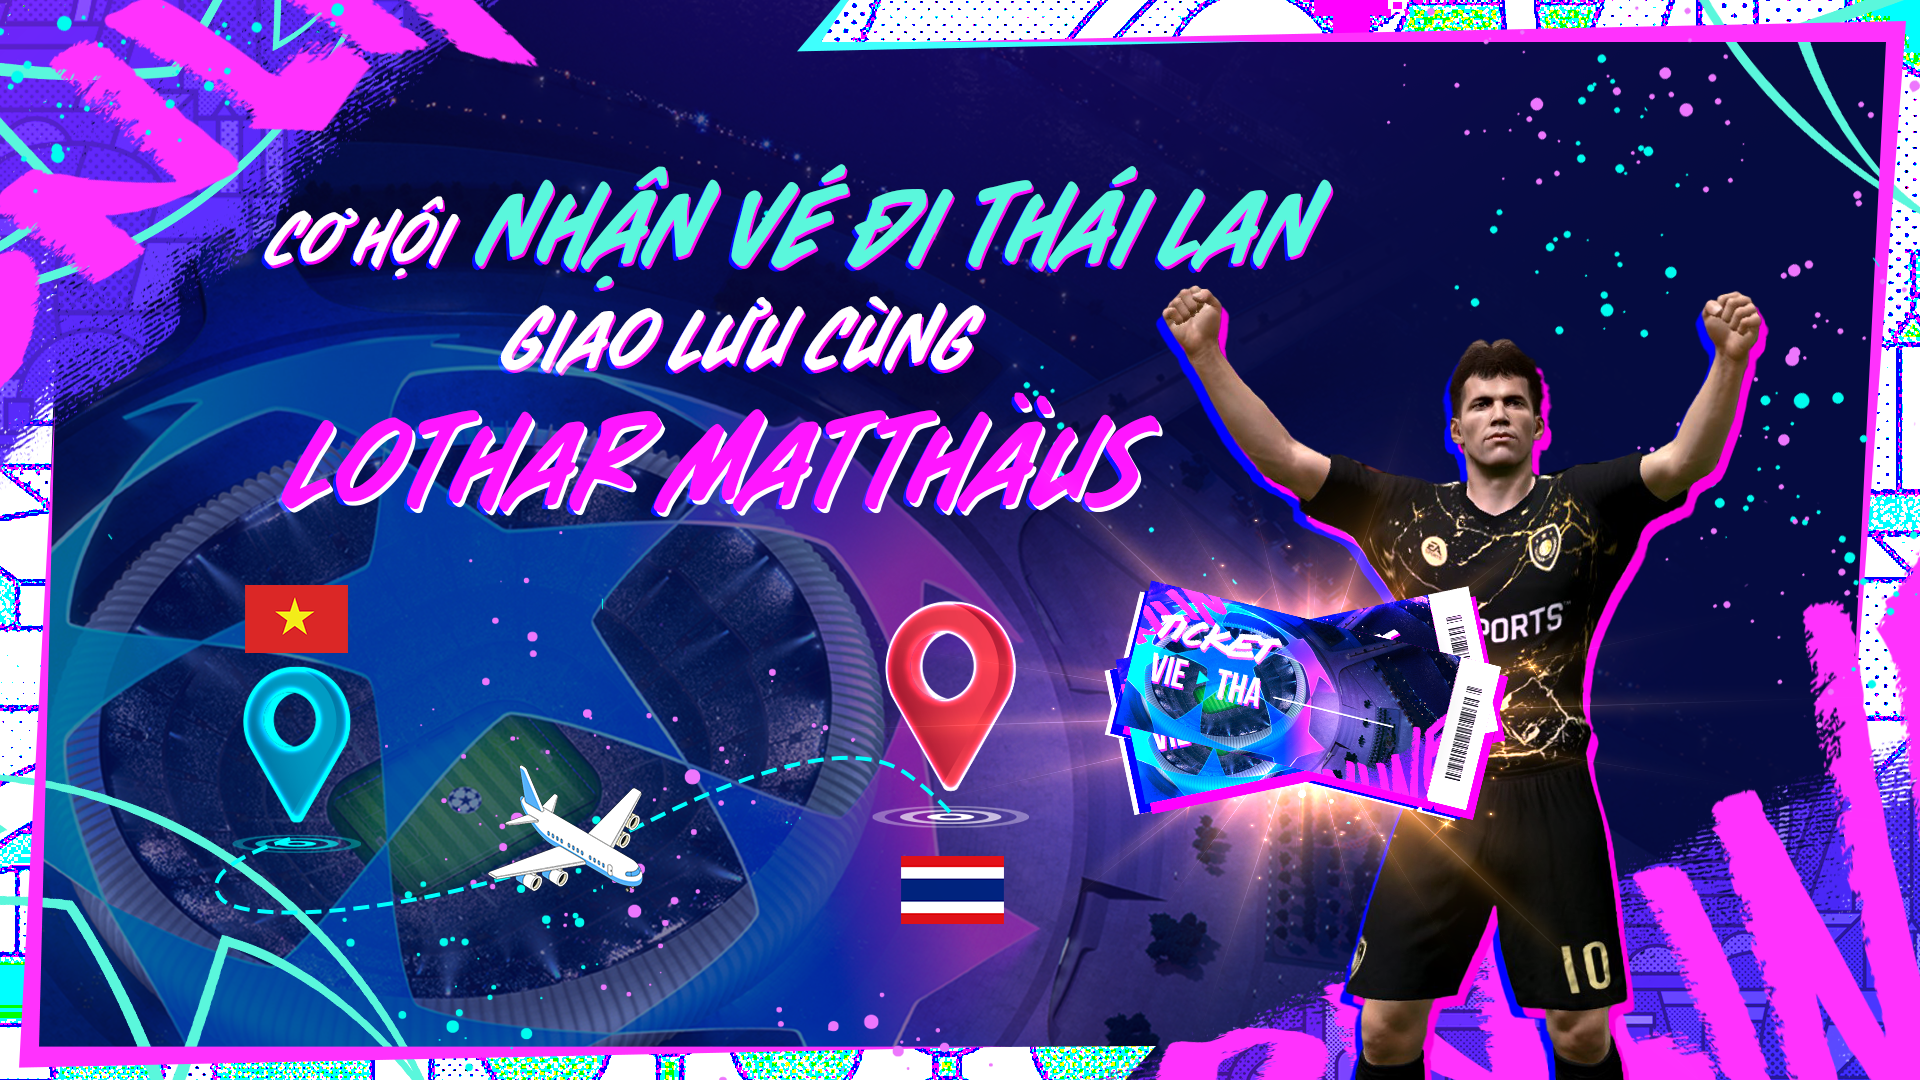 FC Online “chơi lớn” khi tặng vé đi Thái Lan giao lưu cùng cựu danh thủ Lothar Matthäus cho người chơi sự kiện miễn phí - Ảnh 3.